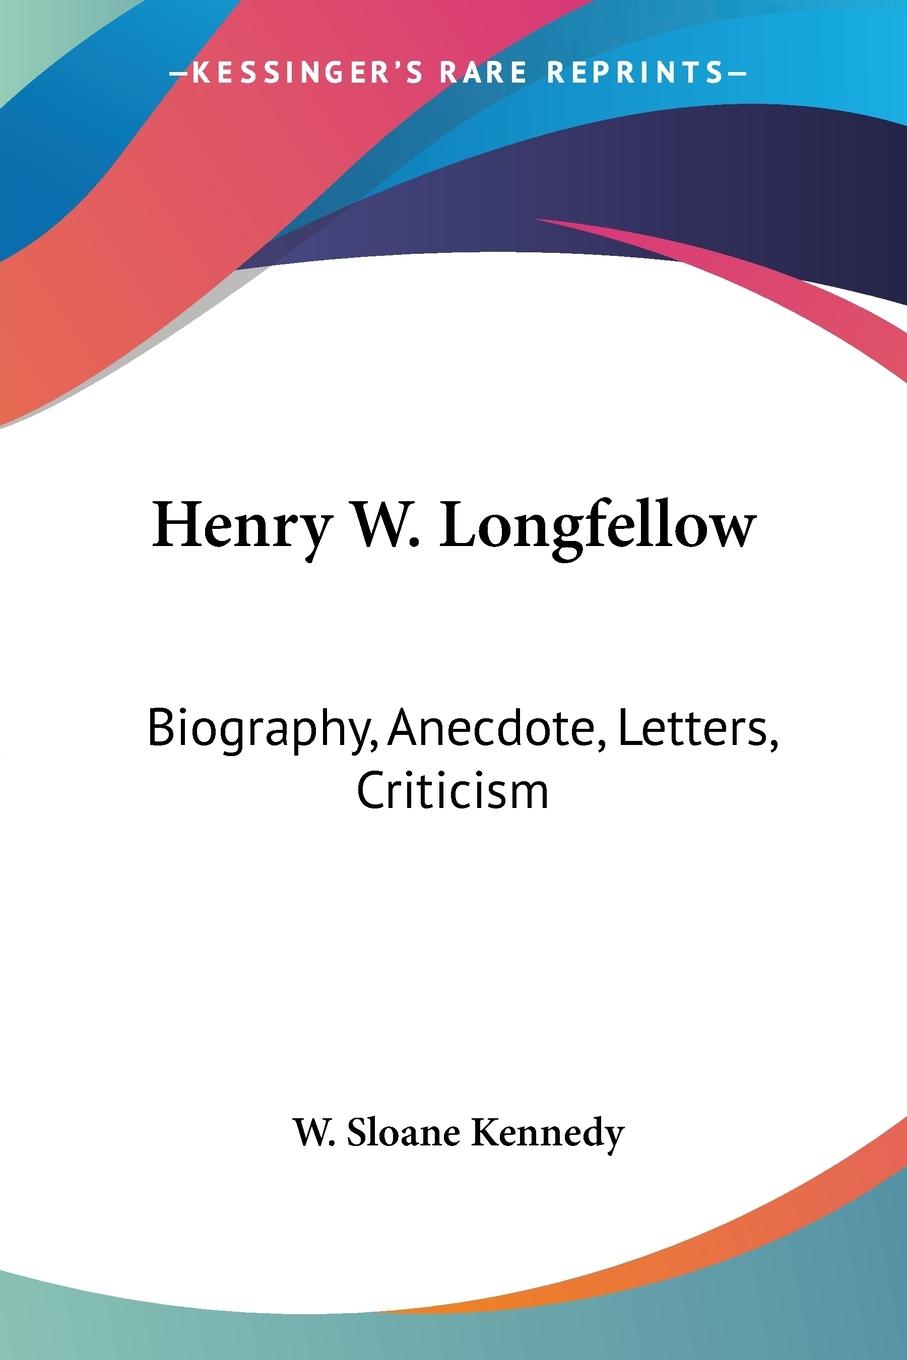 Henry W. Longfellow - Kennedy, W. Sloane